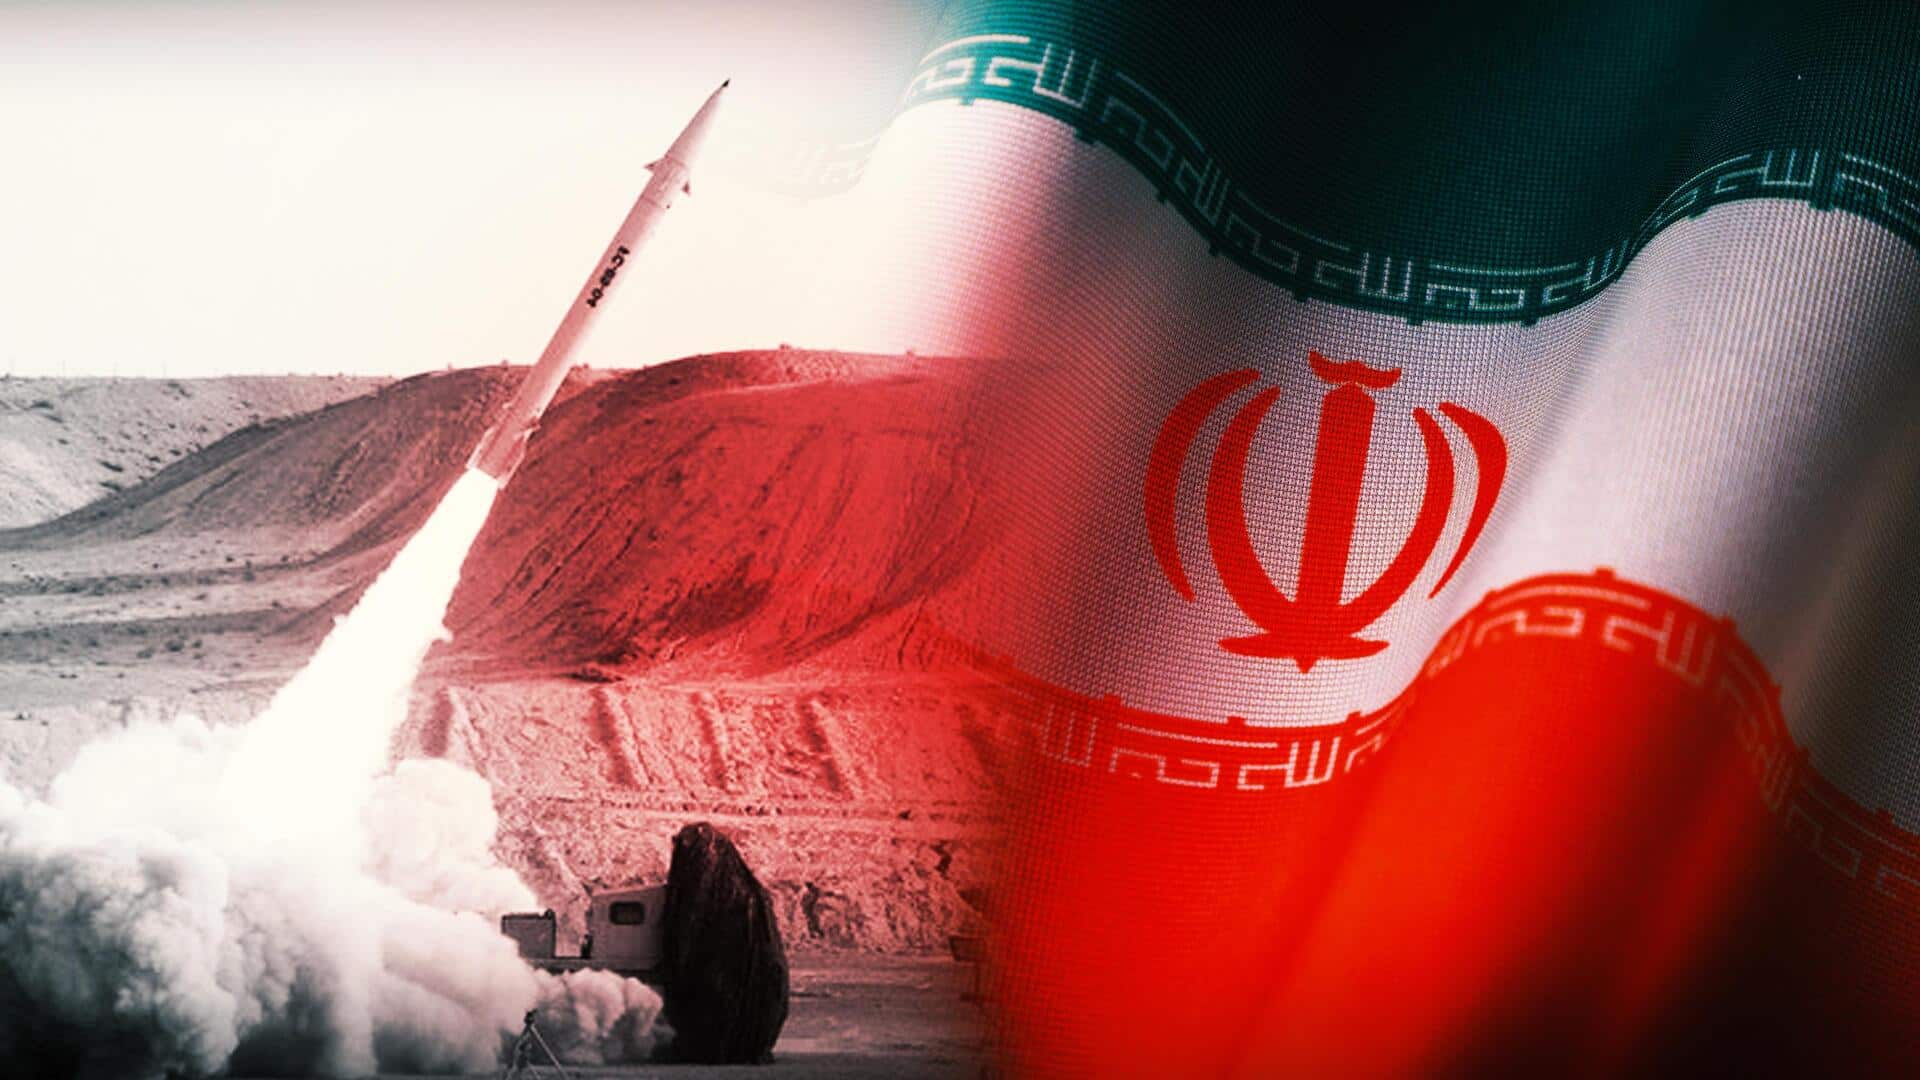 इजरायल के साथ तनाव के बीच ईरान बोला- अस्तित्व पर खतरा आया तो परमाणु हथियार बनाएंगे